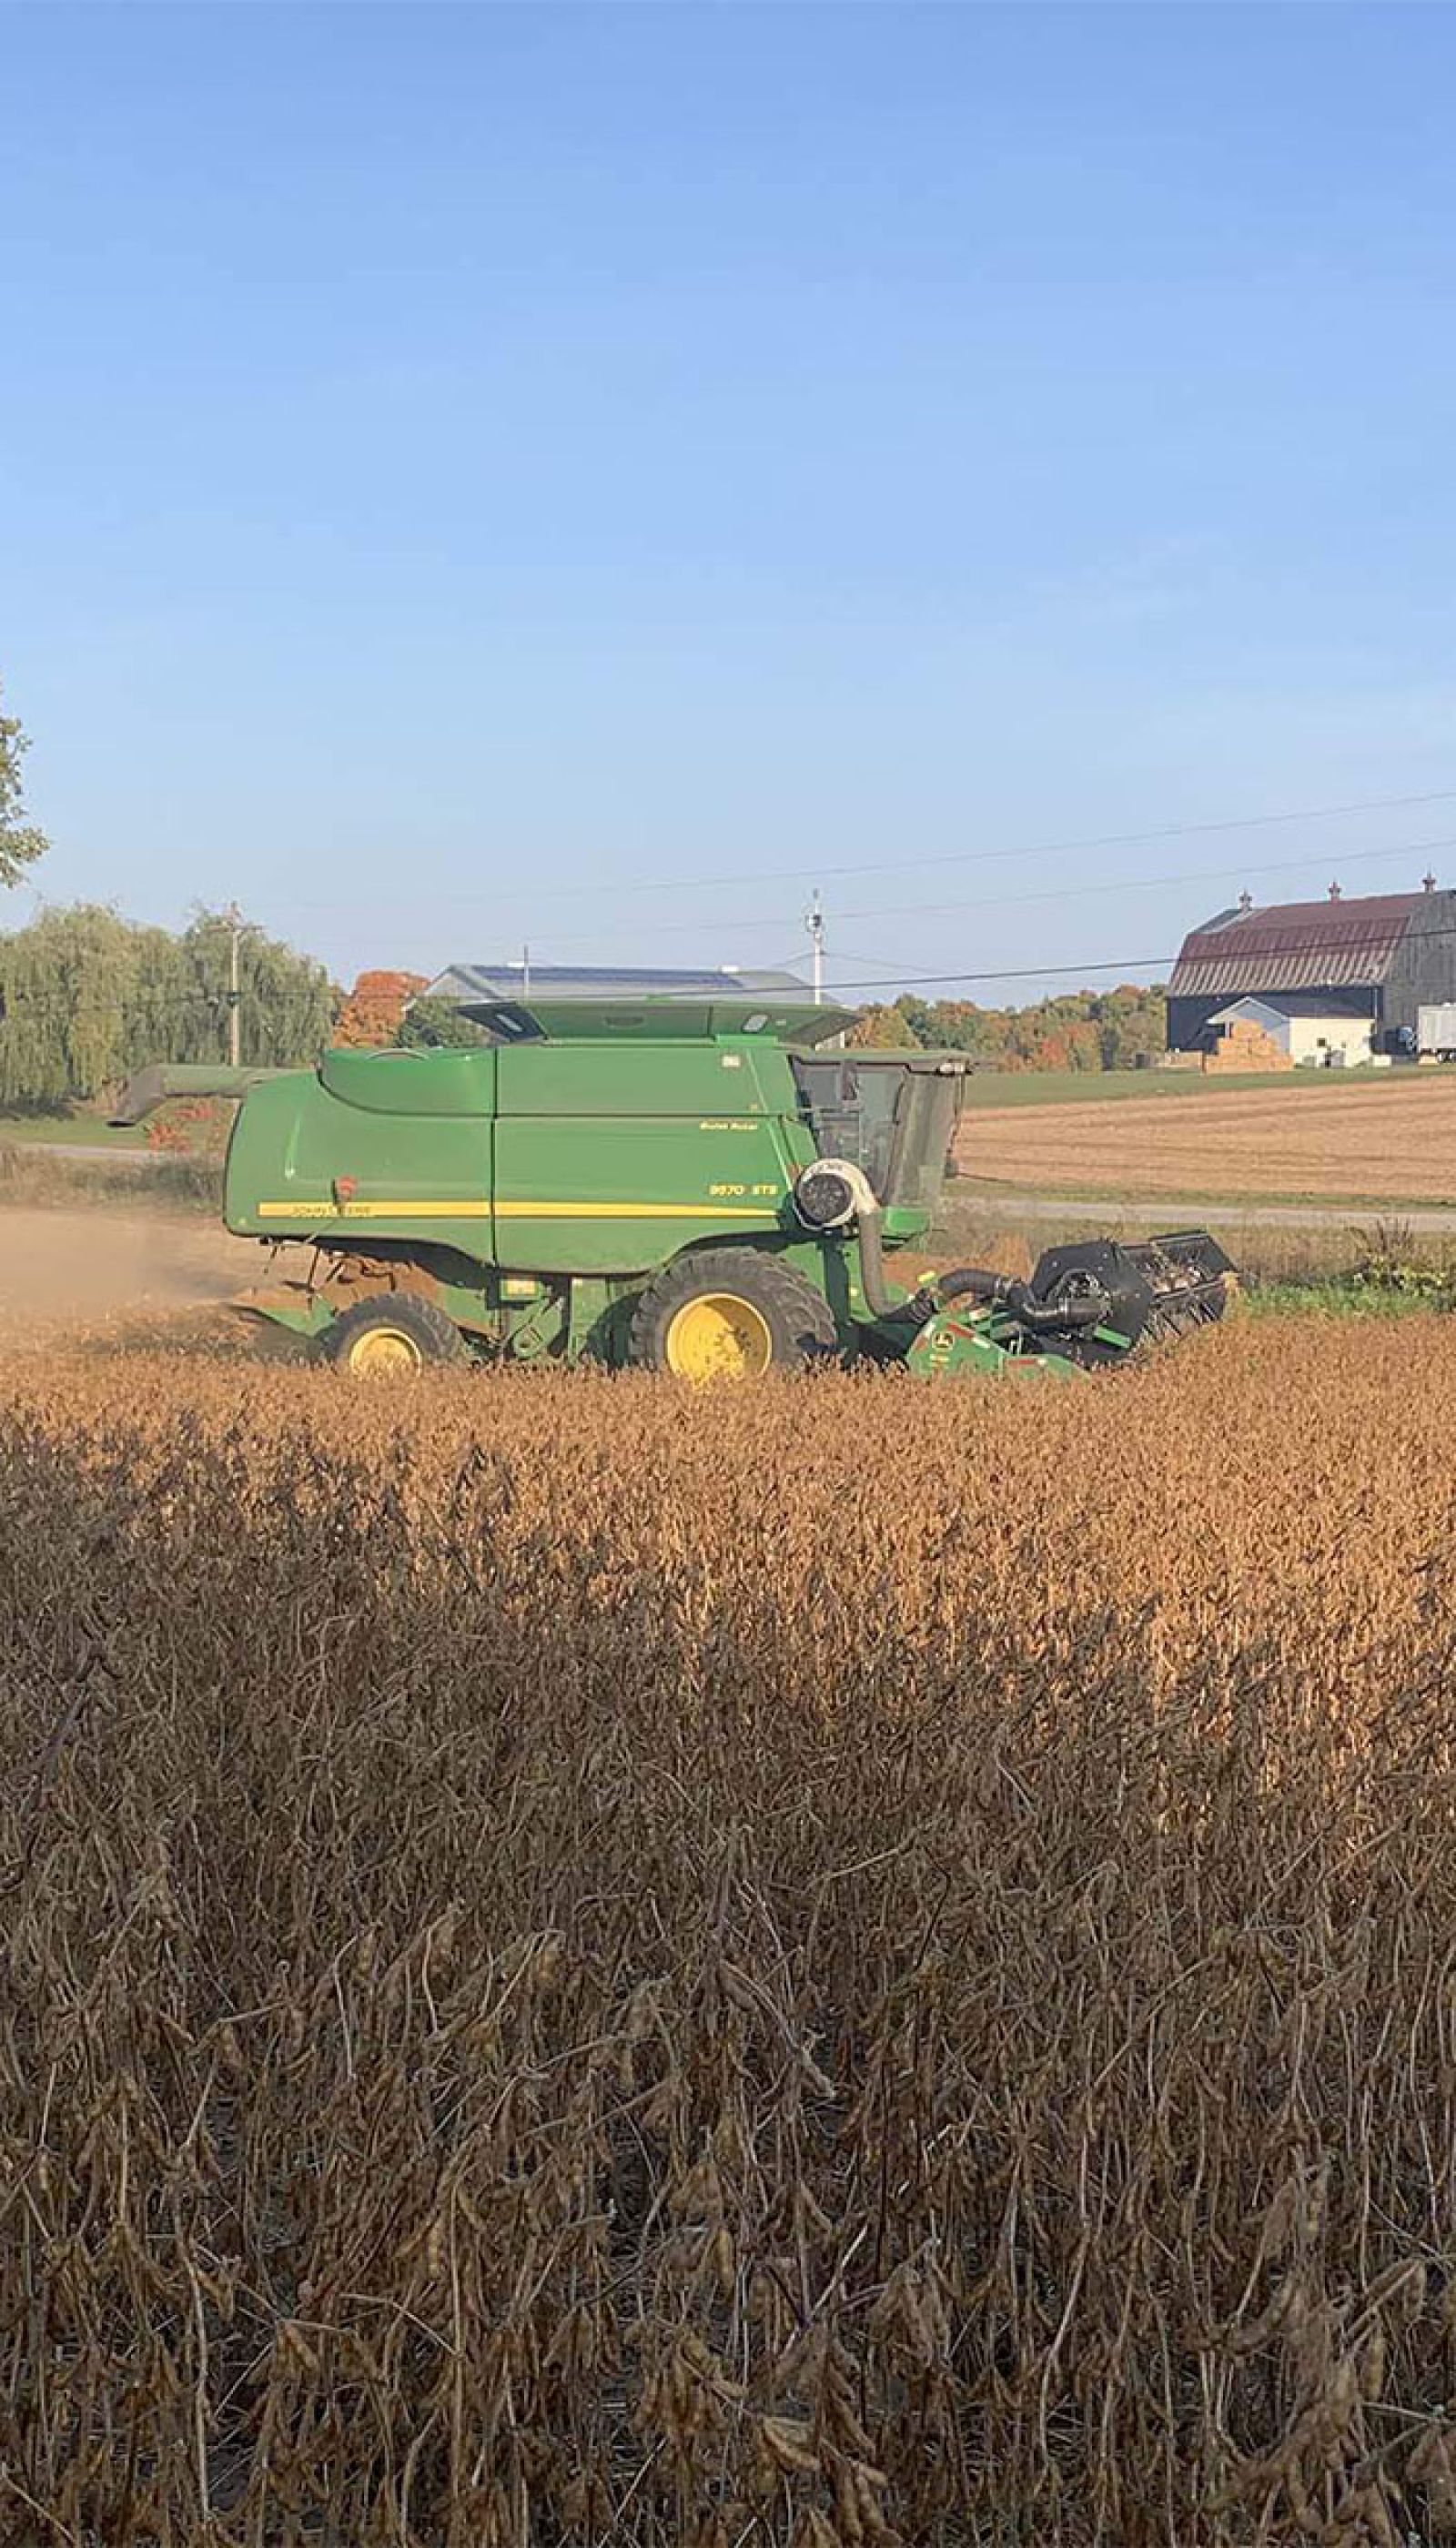 Harvex harvesting grain in the field